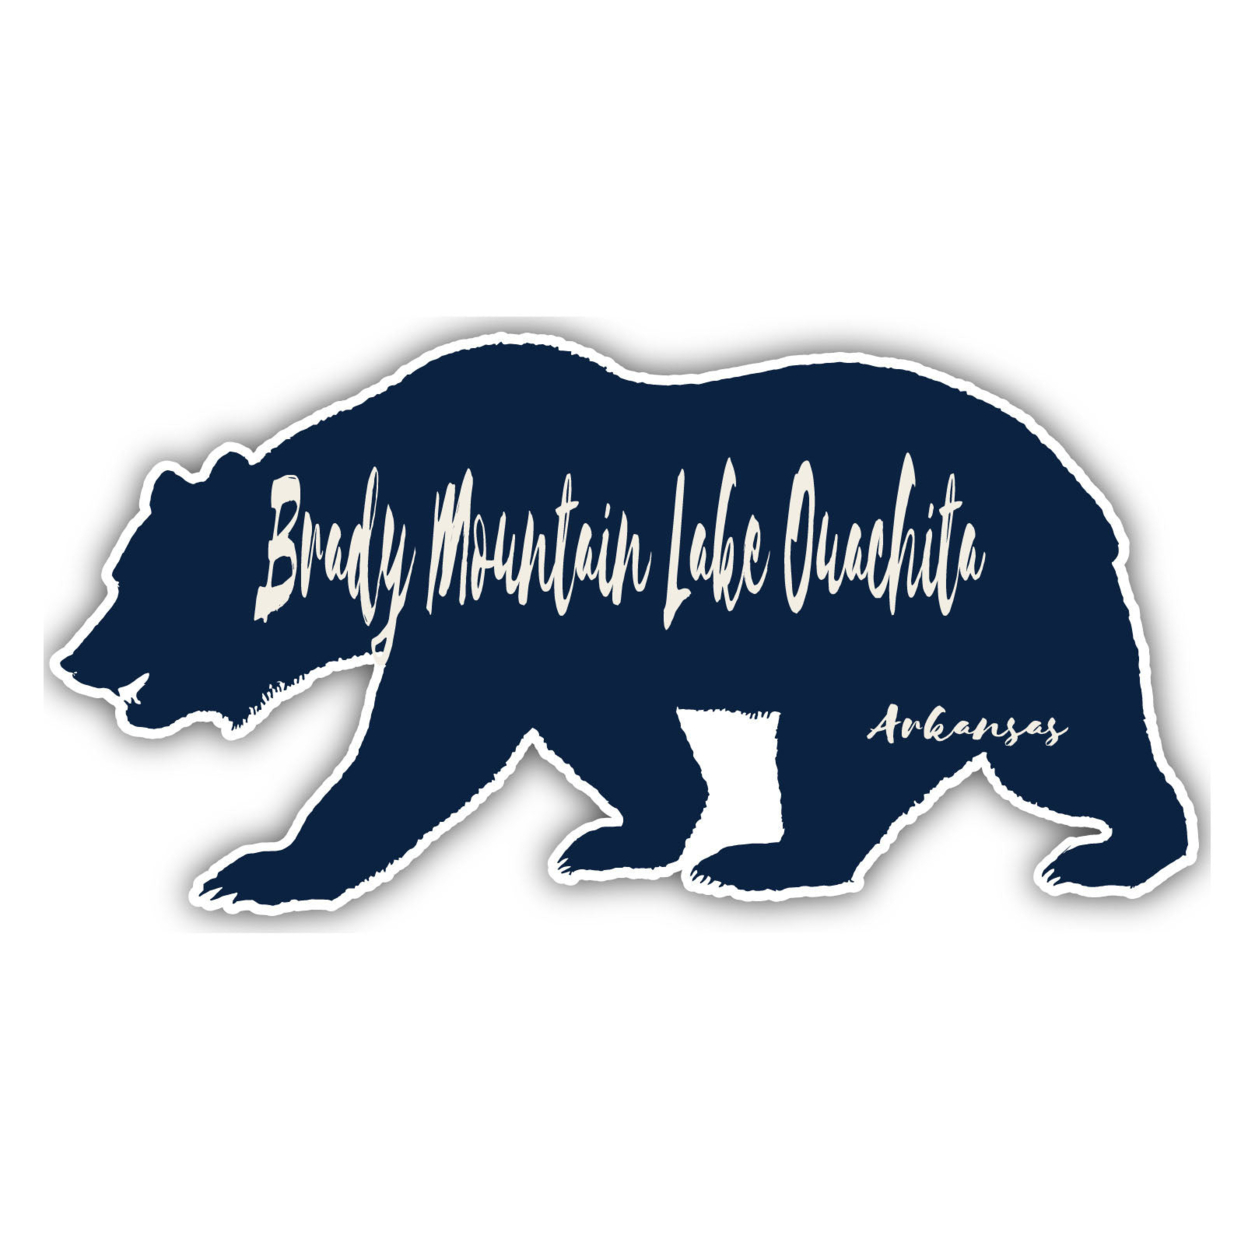 Brady Mountain Lake Ouachita Arkansas Souvenir Decorative Stickers (Choose Theme And Size) - 4-Pack, 12-Inch, Tent